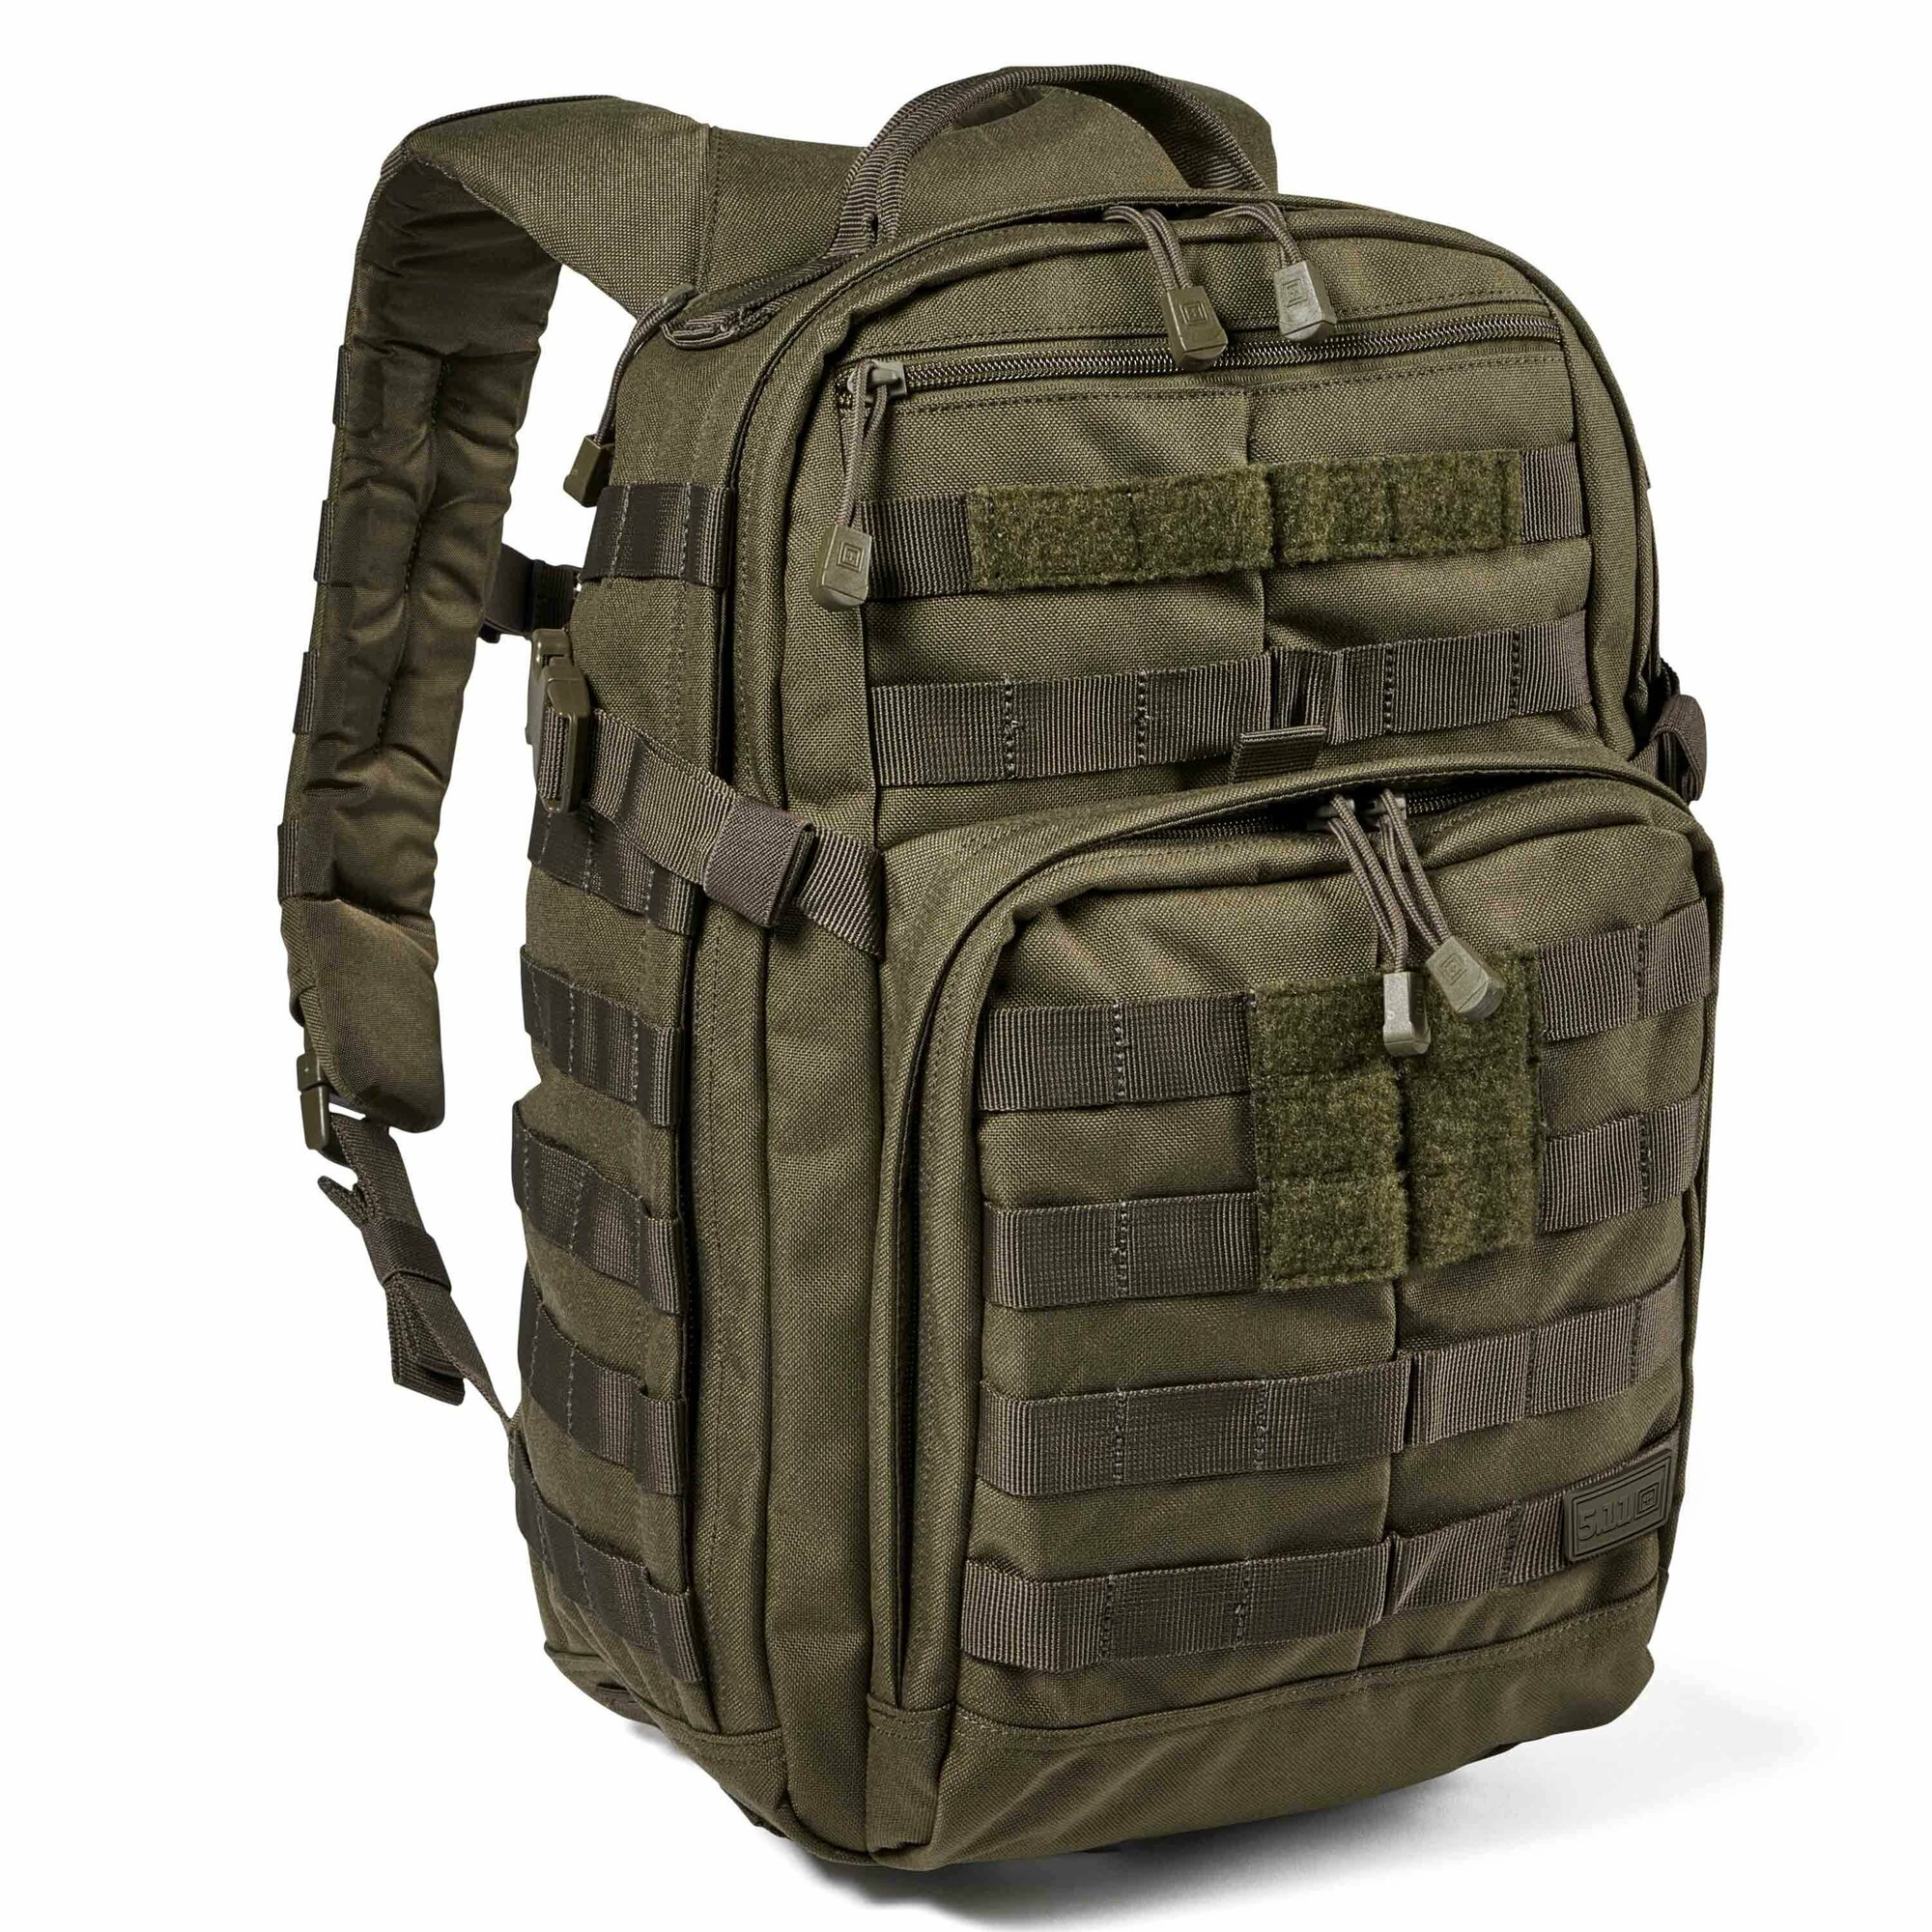 5.11 Backpack Rush 12 2.0 ranger green